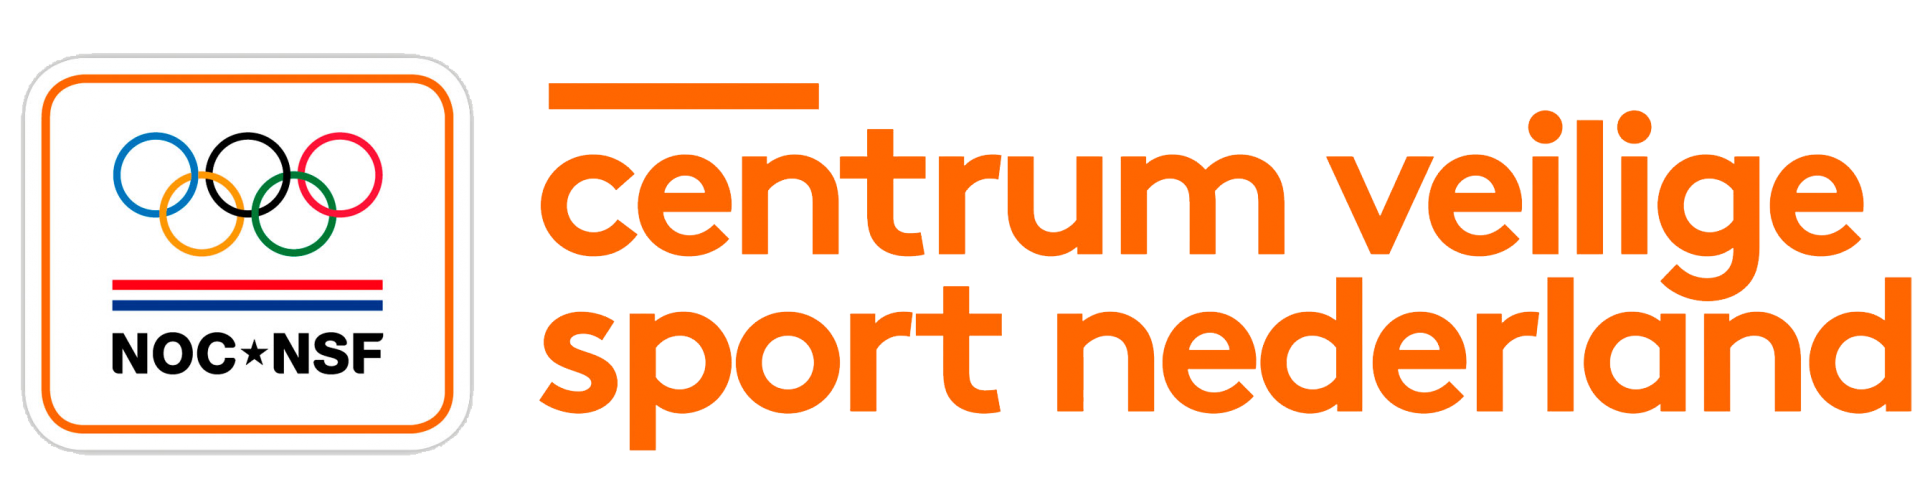 Centrum veilige sport nederland